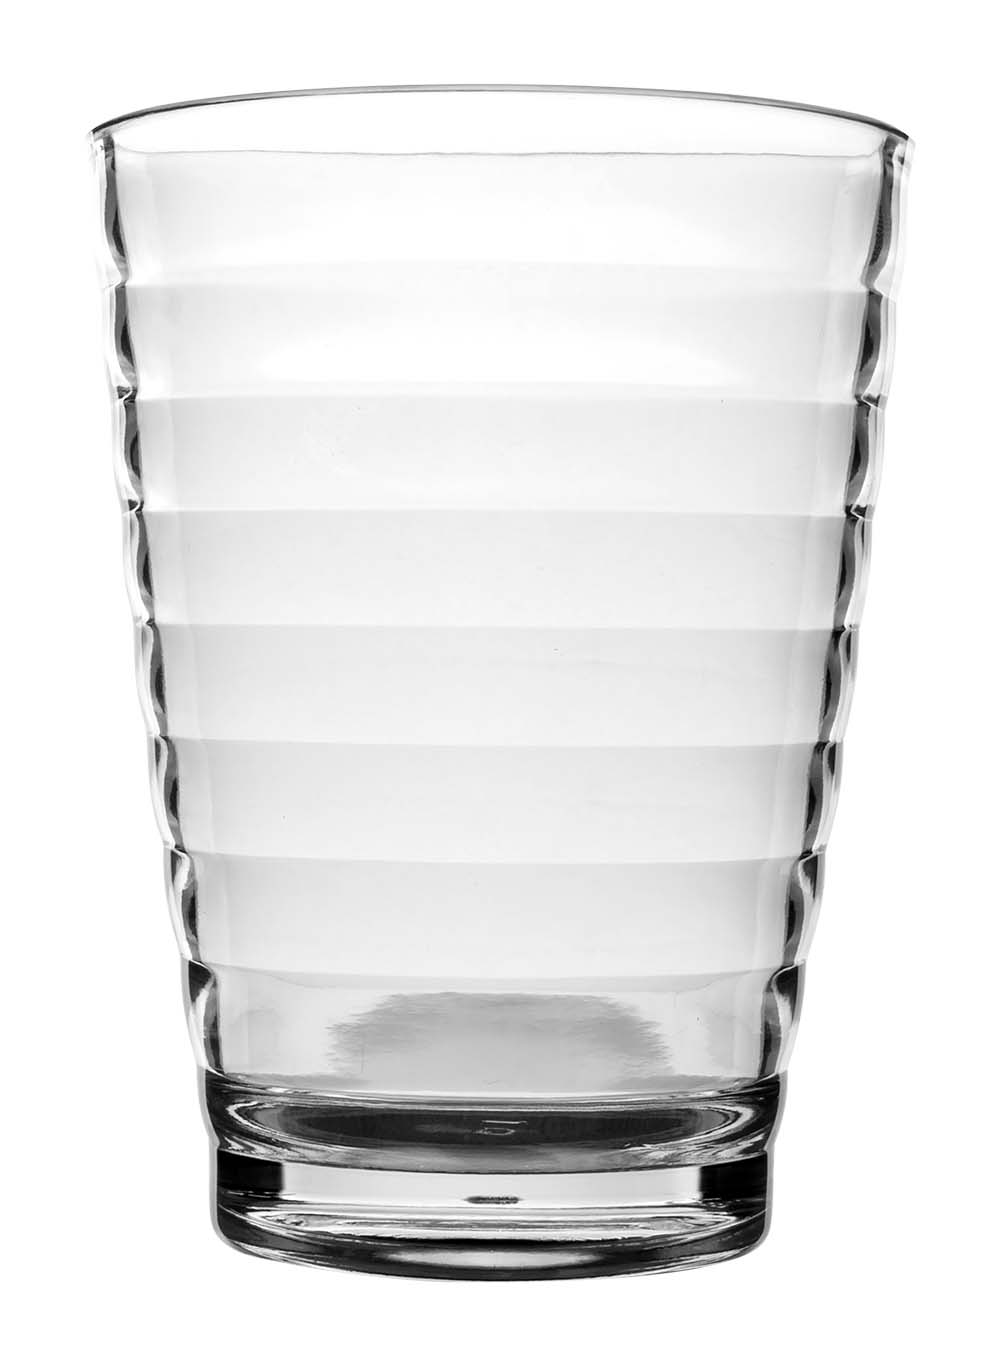 6101496 Een extra stevig en luxe limonadeglas. Gemaakt van 100% polycarbonaat. Hierdoor is het glas vrijwel onbreekbaar, lichtgewicht en kraswerend. Ook is dit glas vaatwasmachinebestendig.